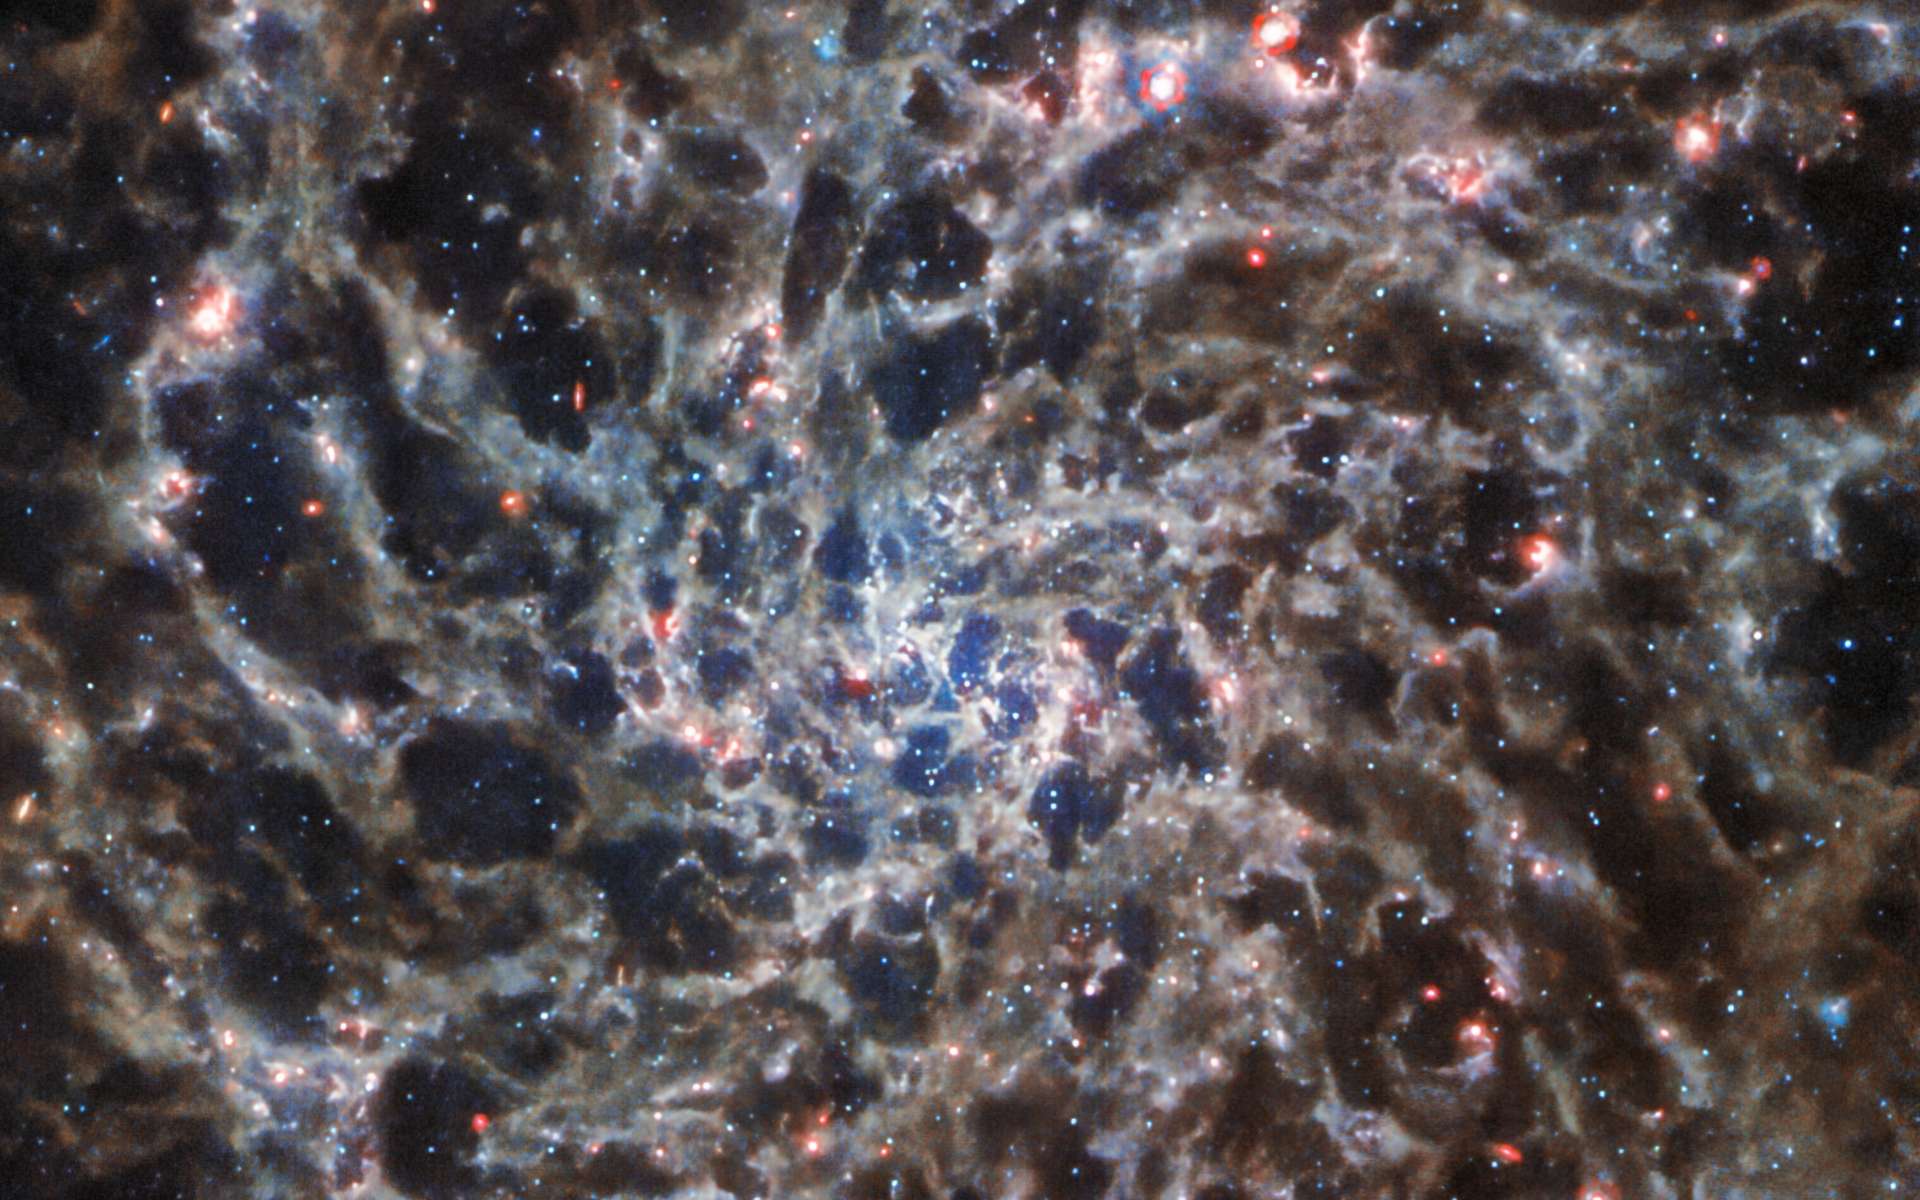 Images sublimes de l’intérieur d’une galaxie spirale capturées par James-Webb et Hubble